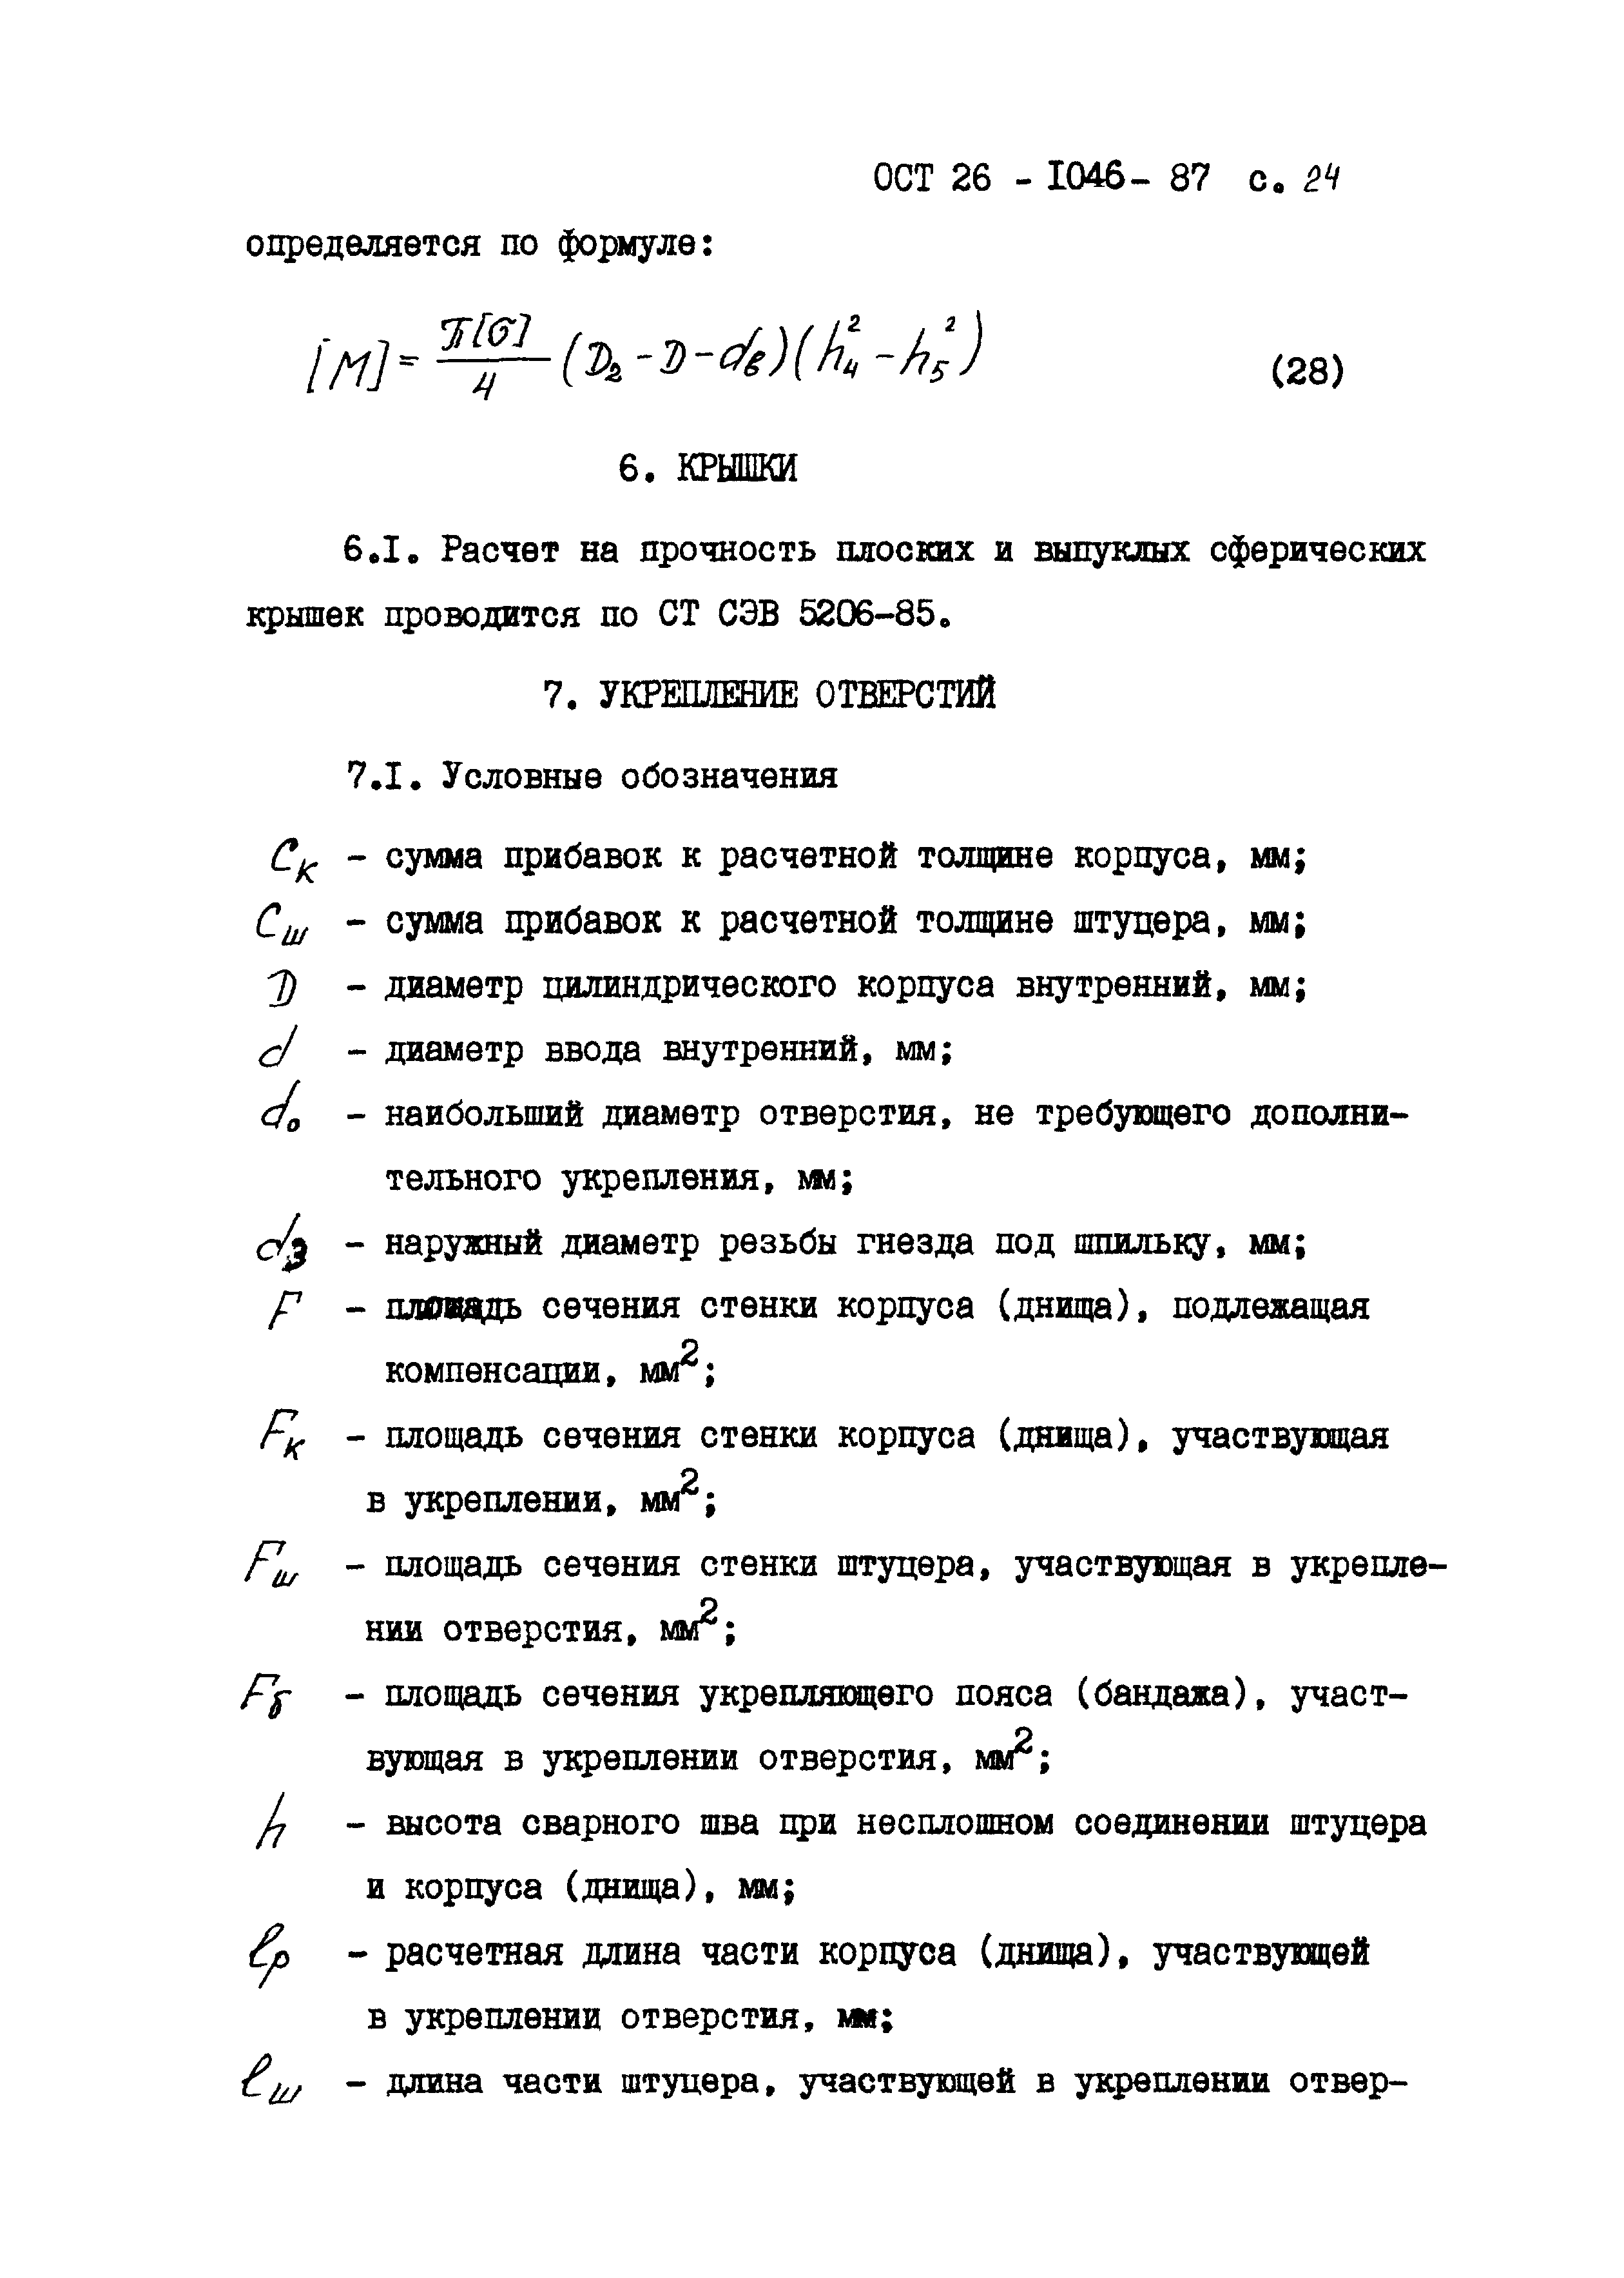 ОСТ 26-1046-87